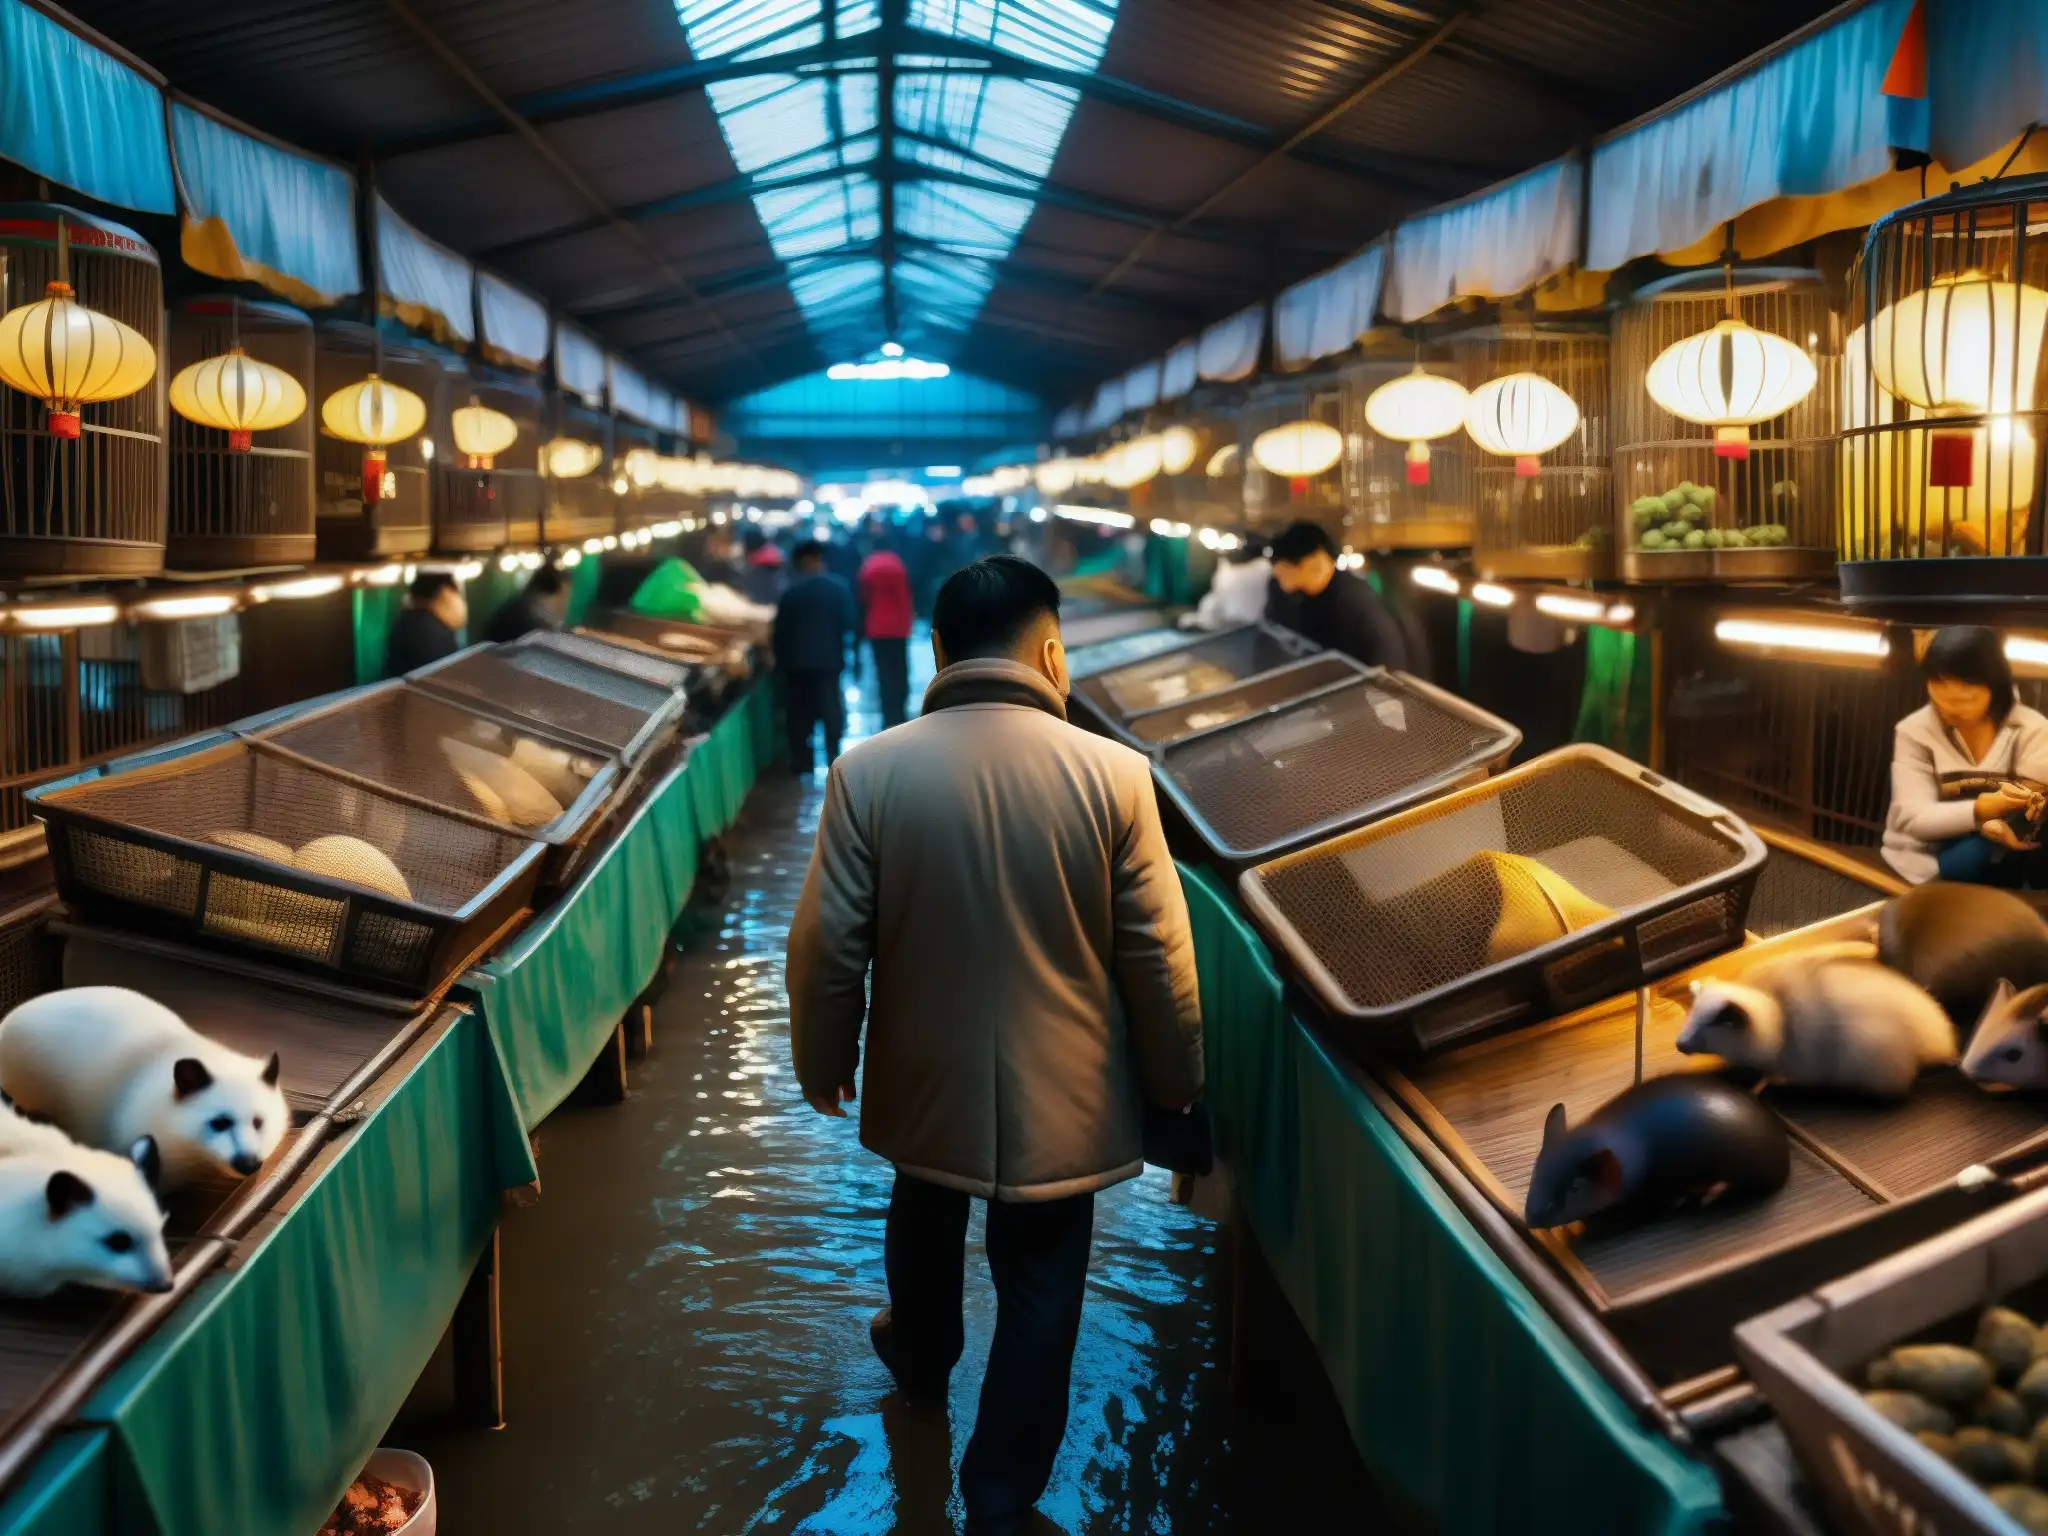 Un mercado húmedo en Wuhan, China, lleno de animales exóticos en jaulas